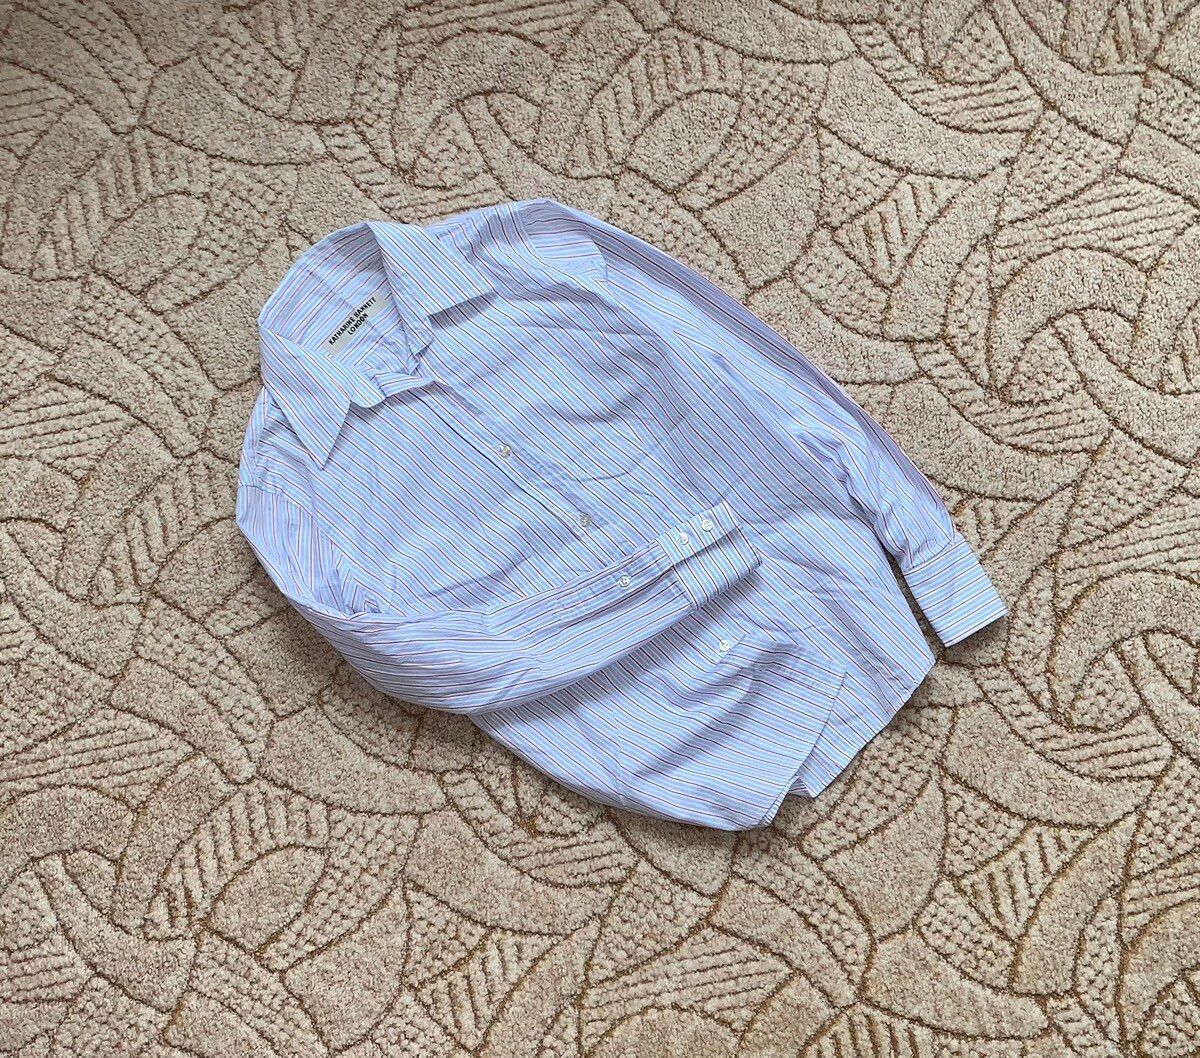 Katharine Hamnett London Katharine hannett London shirts long sleeve blouses Women M Size M / US 6-8 / IT 42-44 - 1 Preview